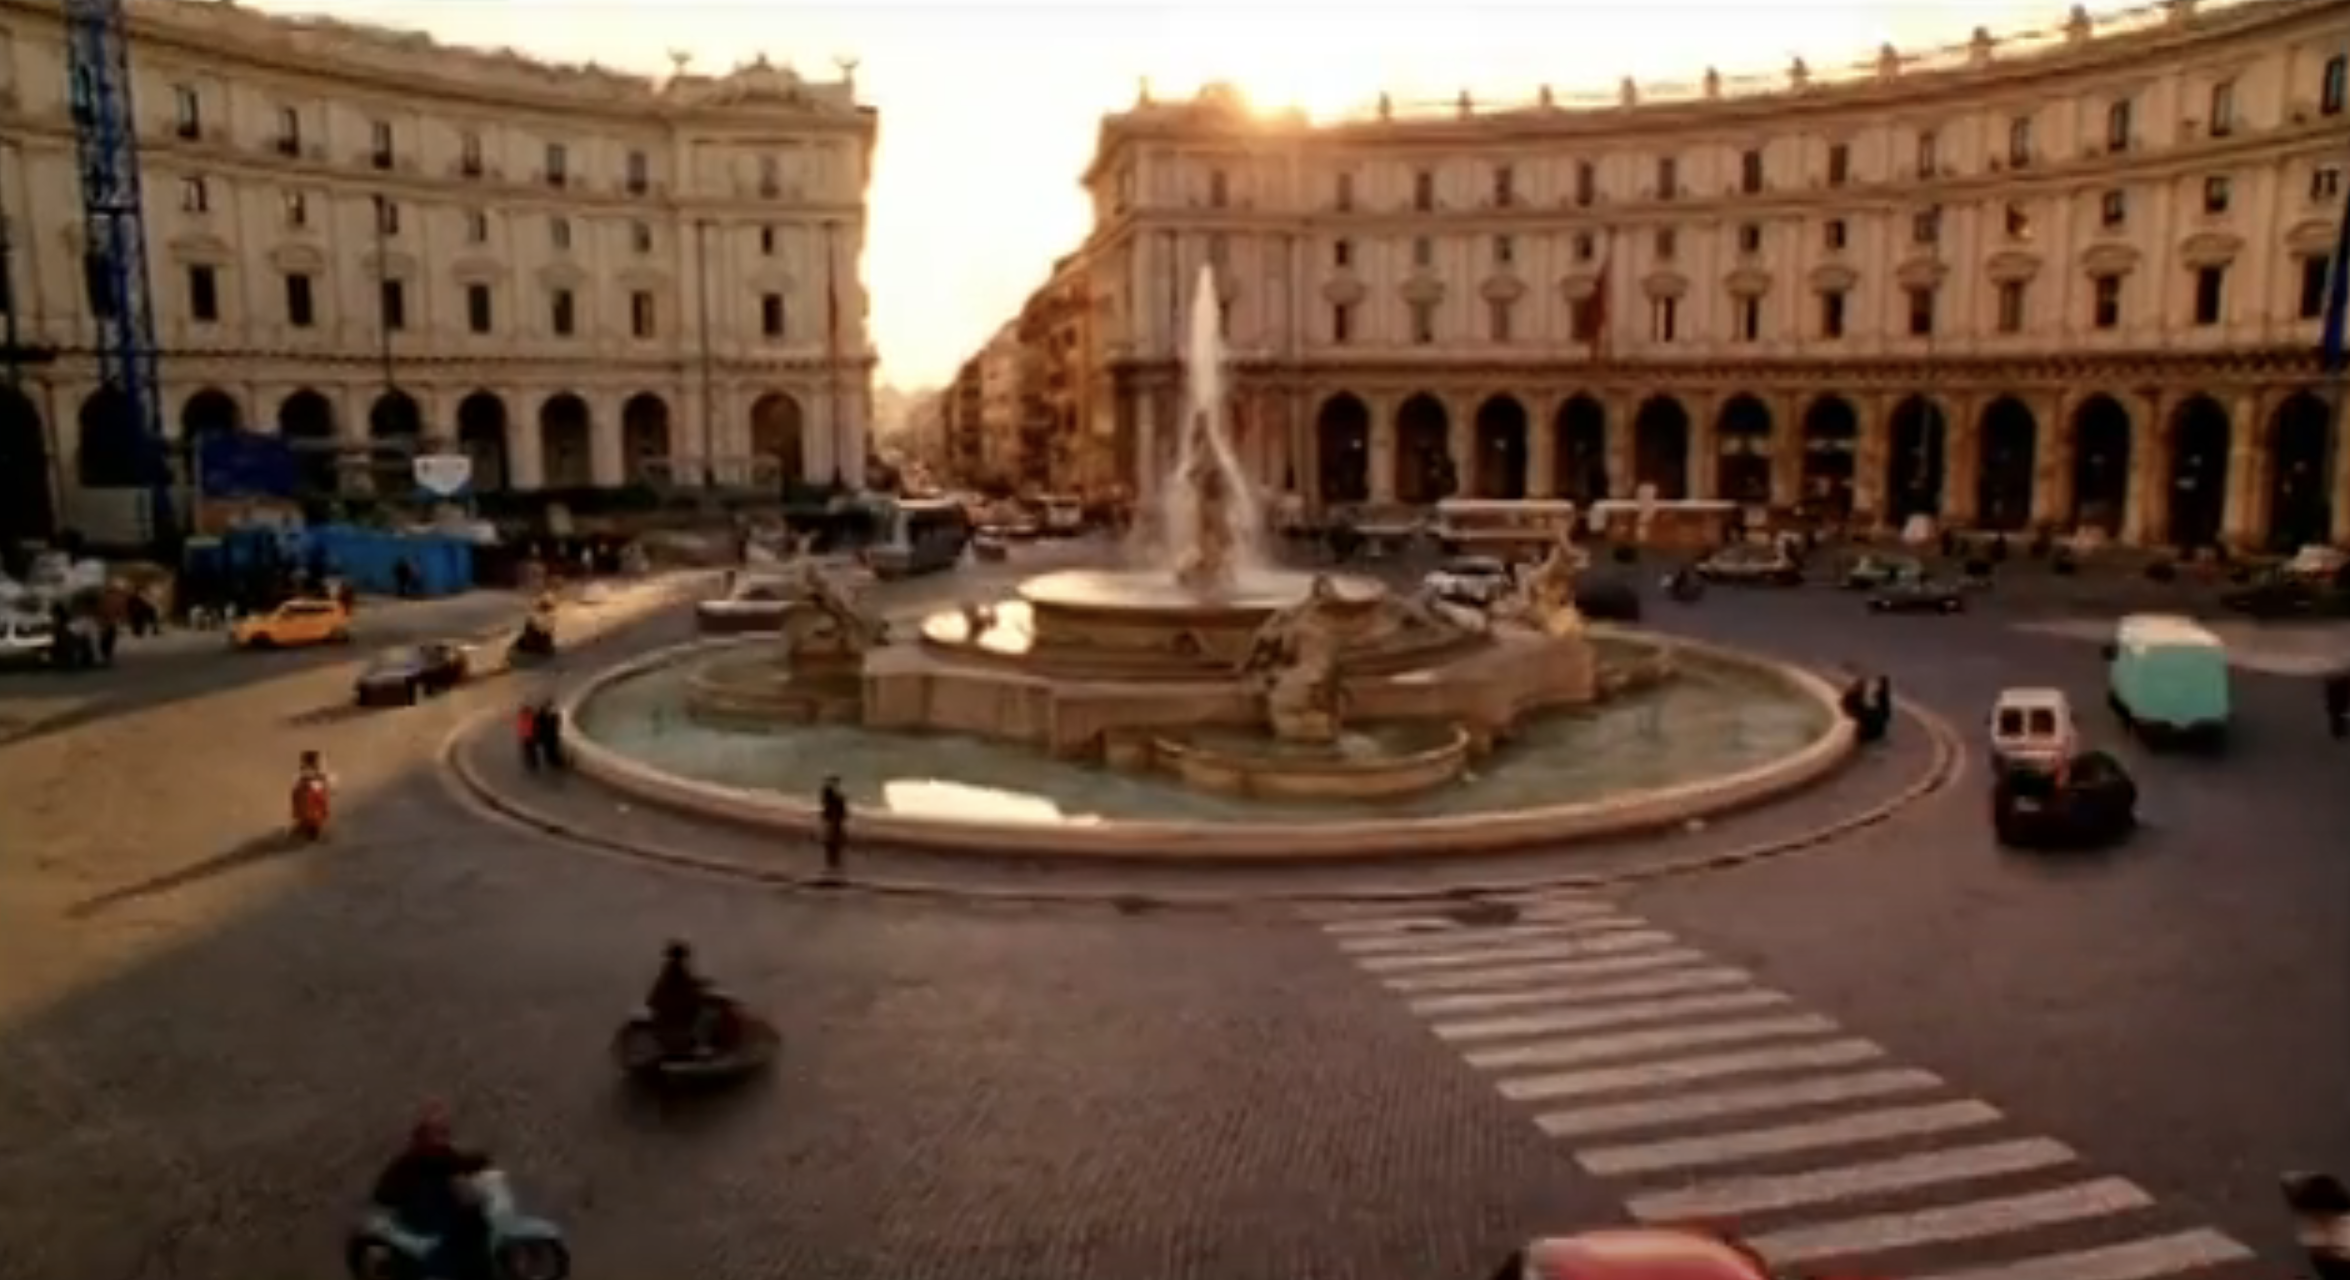 The Piazza della Repubblica in Rome